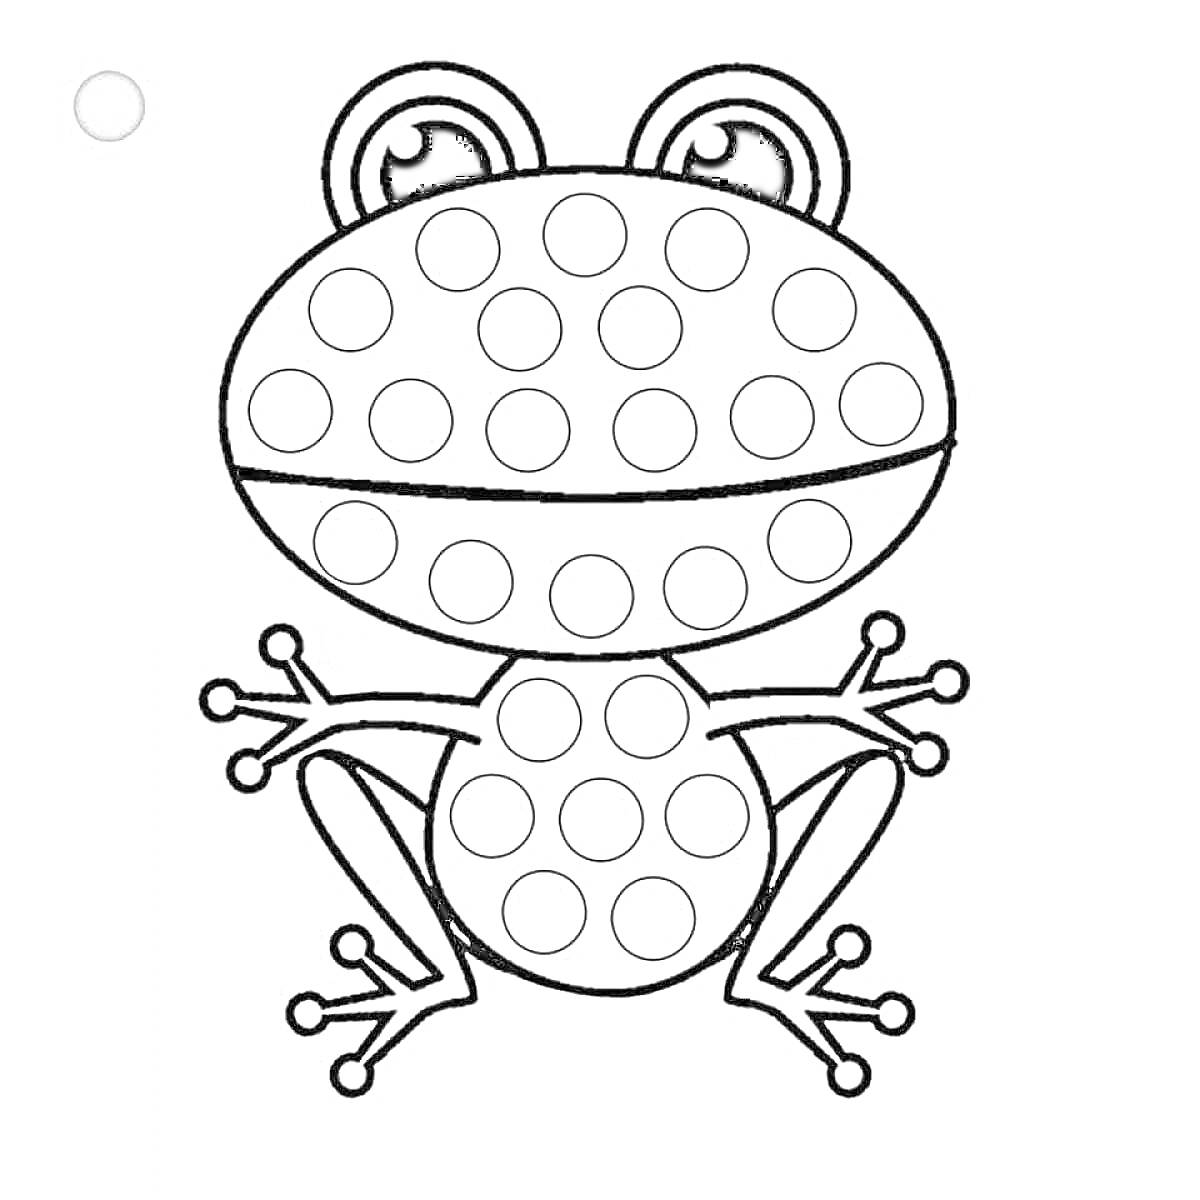 Раскраска лягушка с кружочками на теле для пальчикового рисования